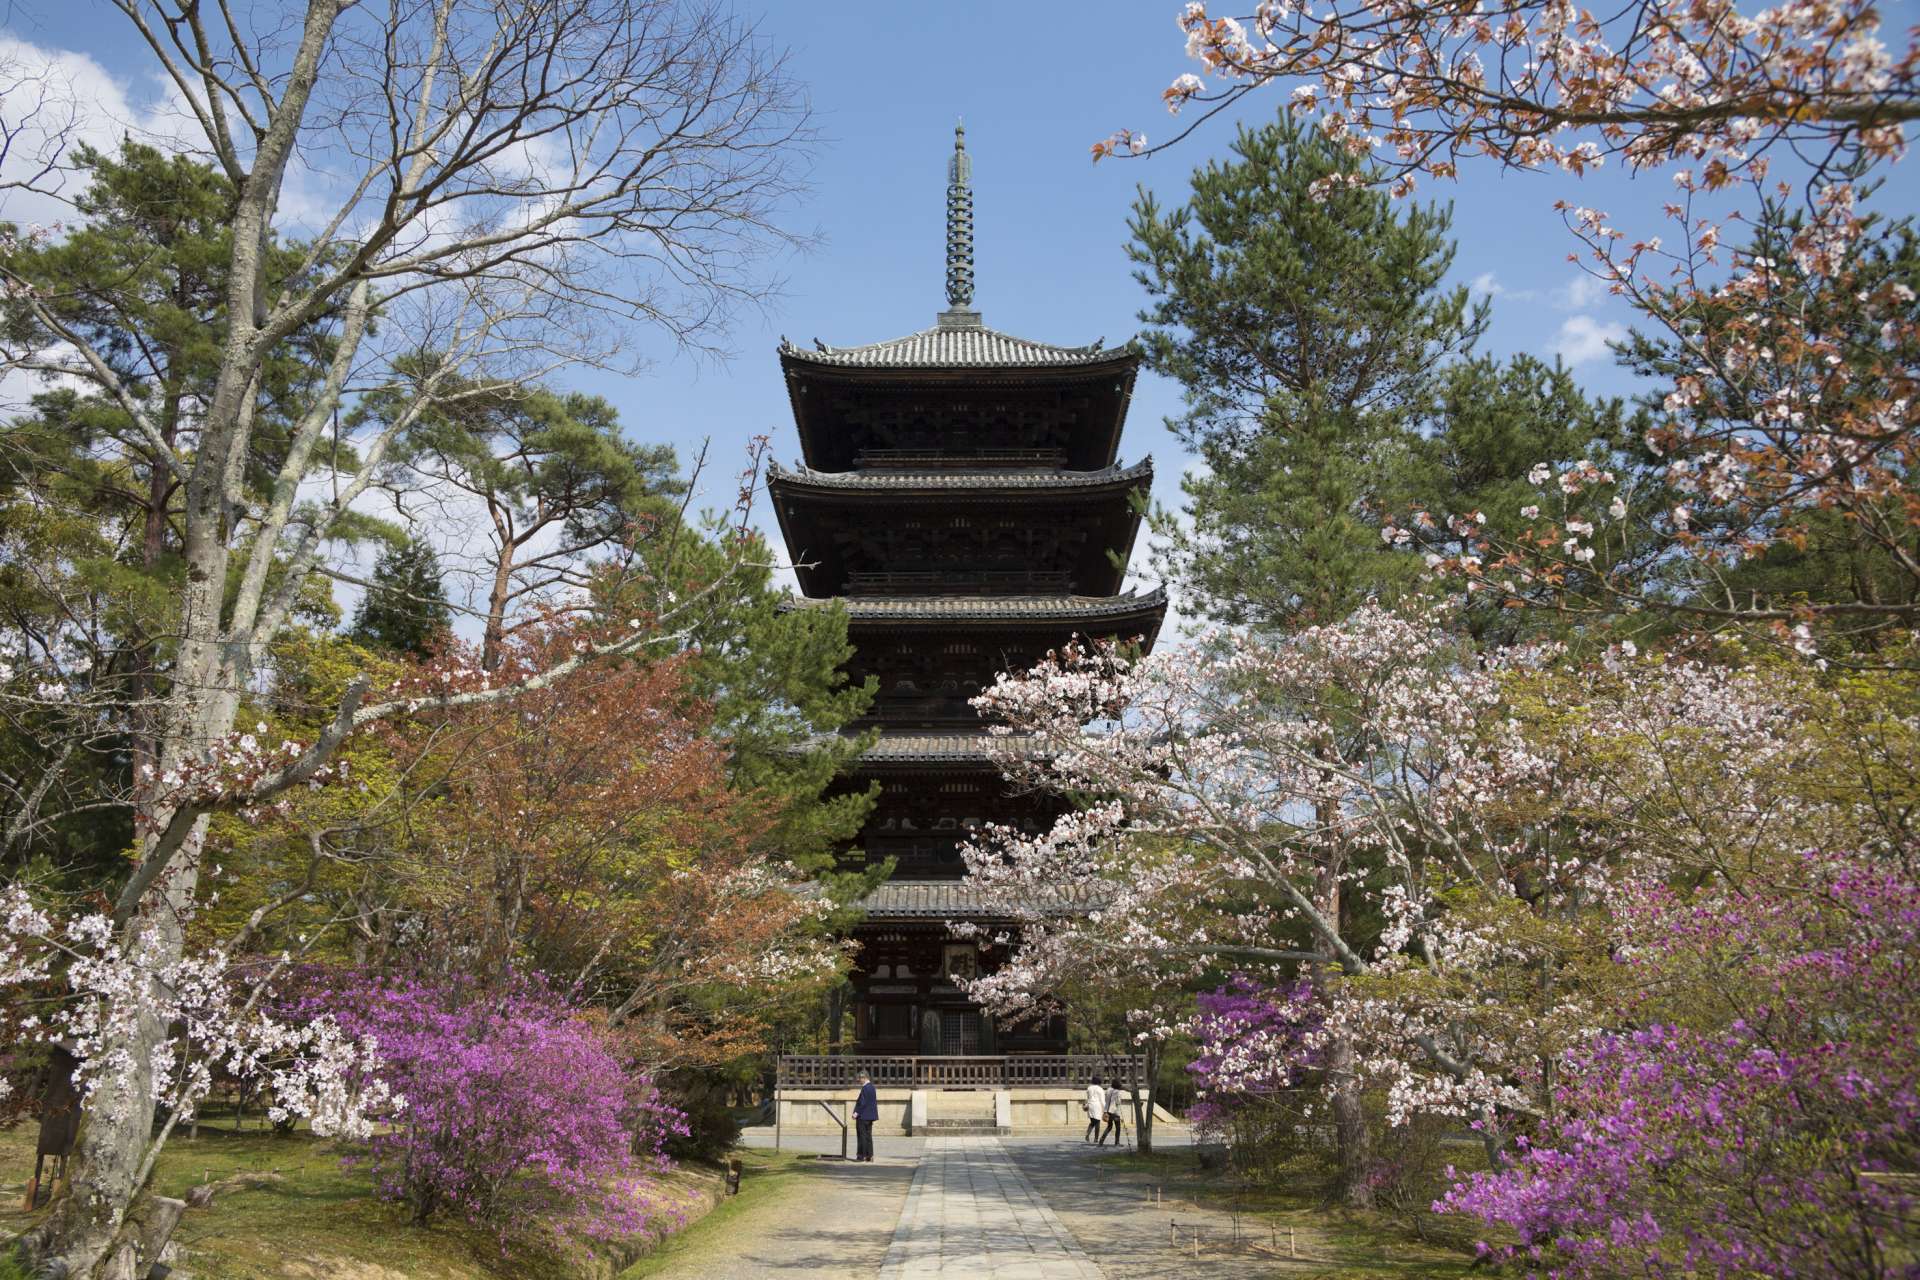 京都必游赏樱景点 世界文化遗产 仁和寺 的御室樱 好运日本行